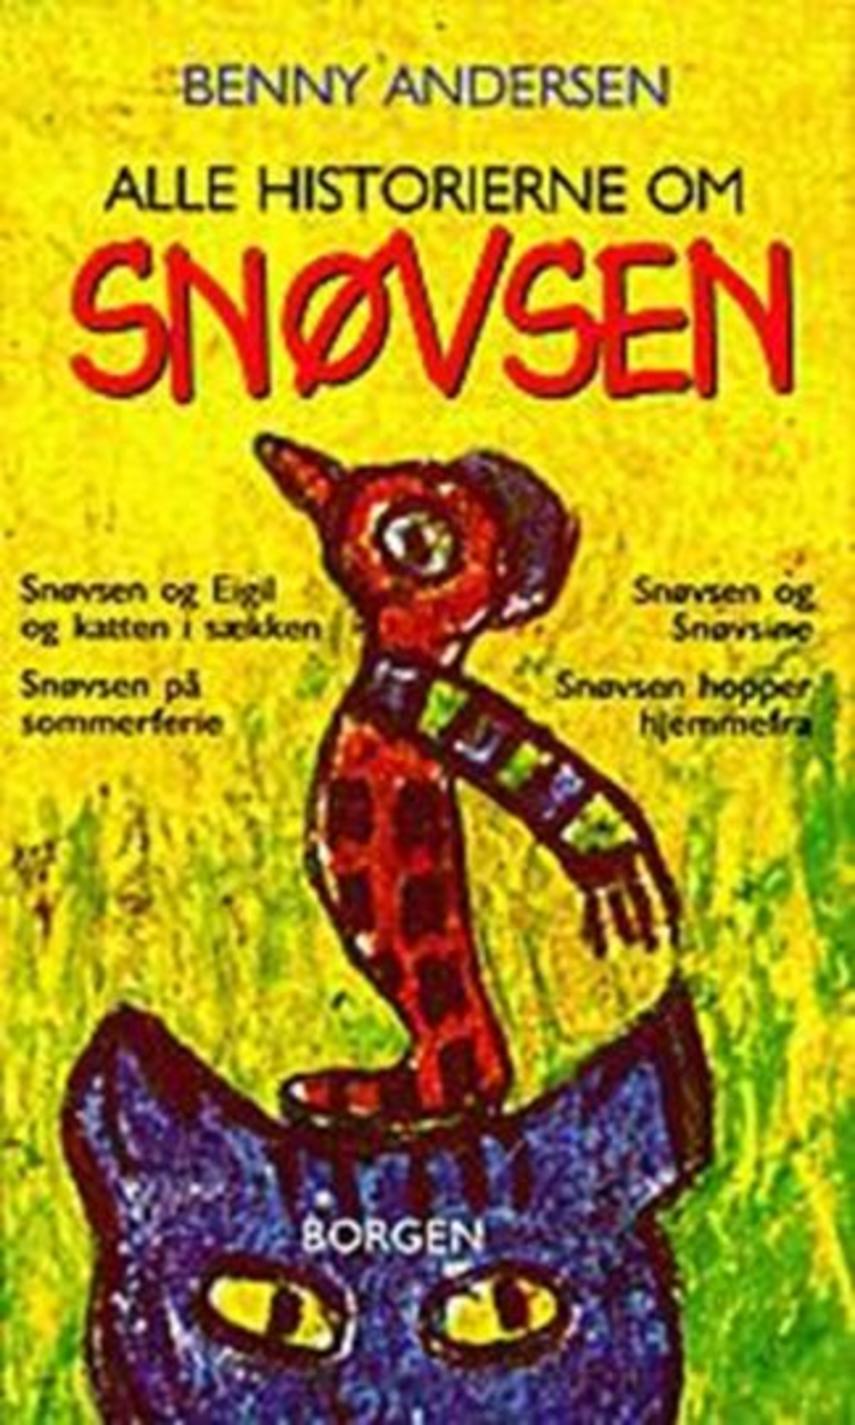 Benny Andersen (f. 1929): Alle historierne om snøvsen